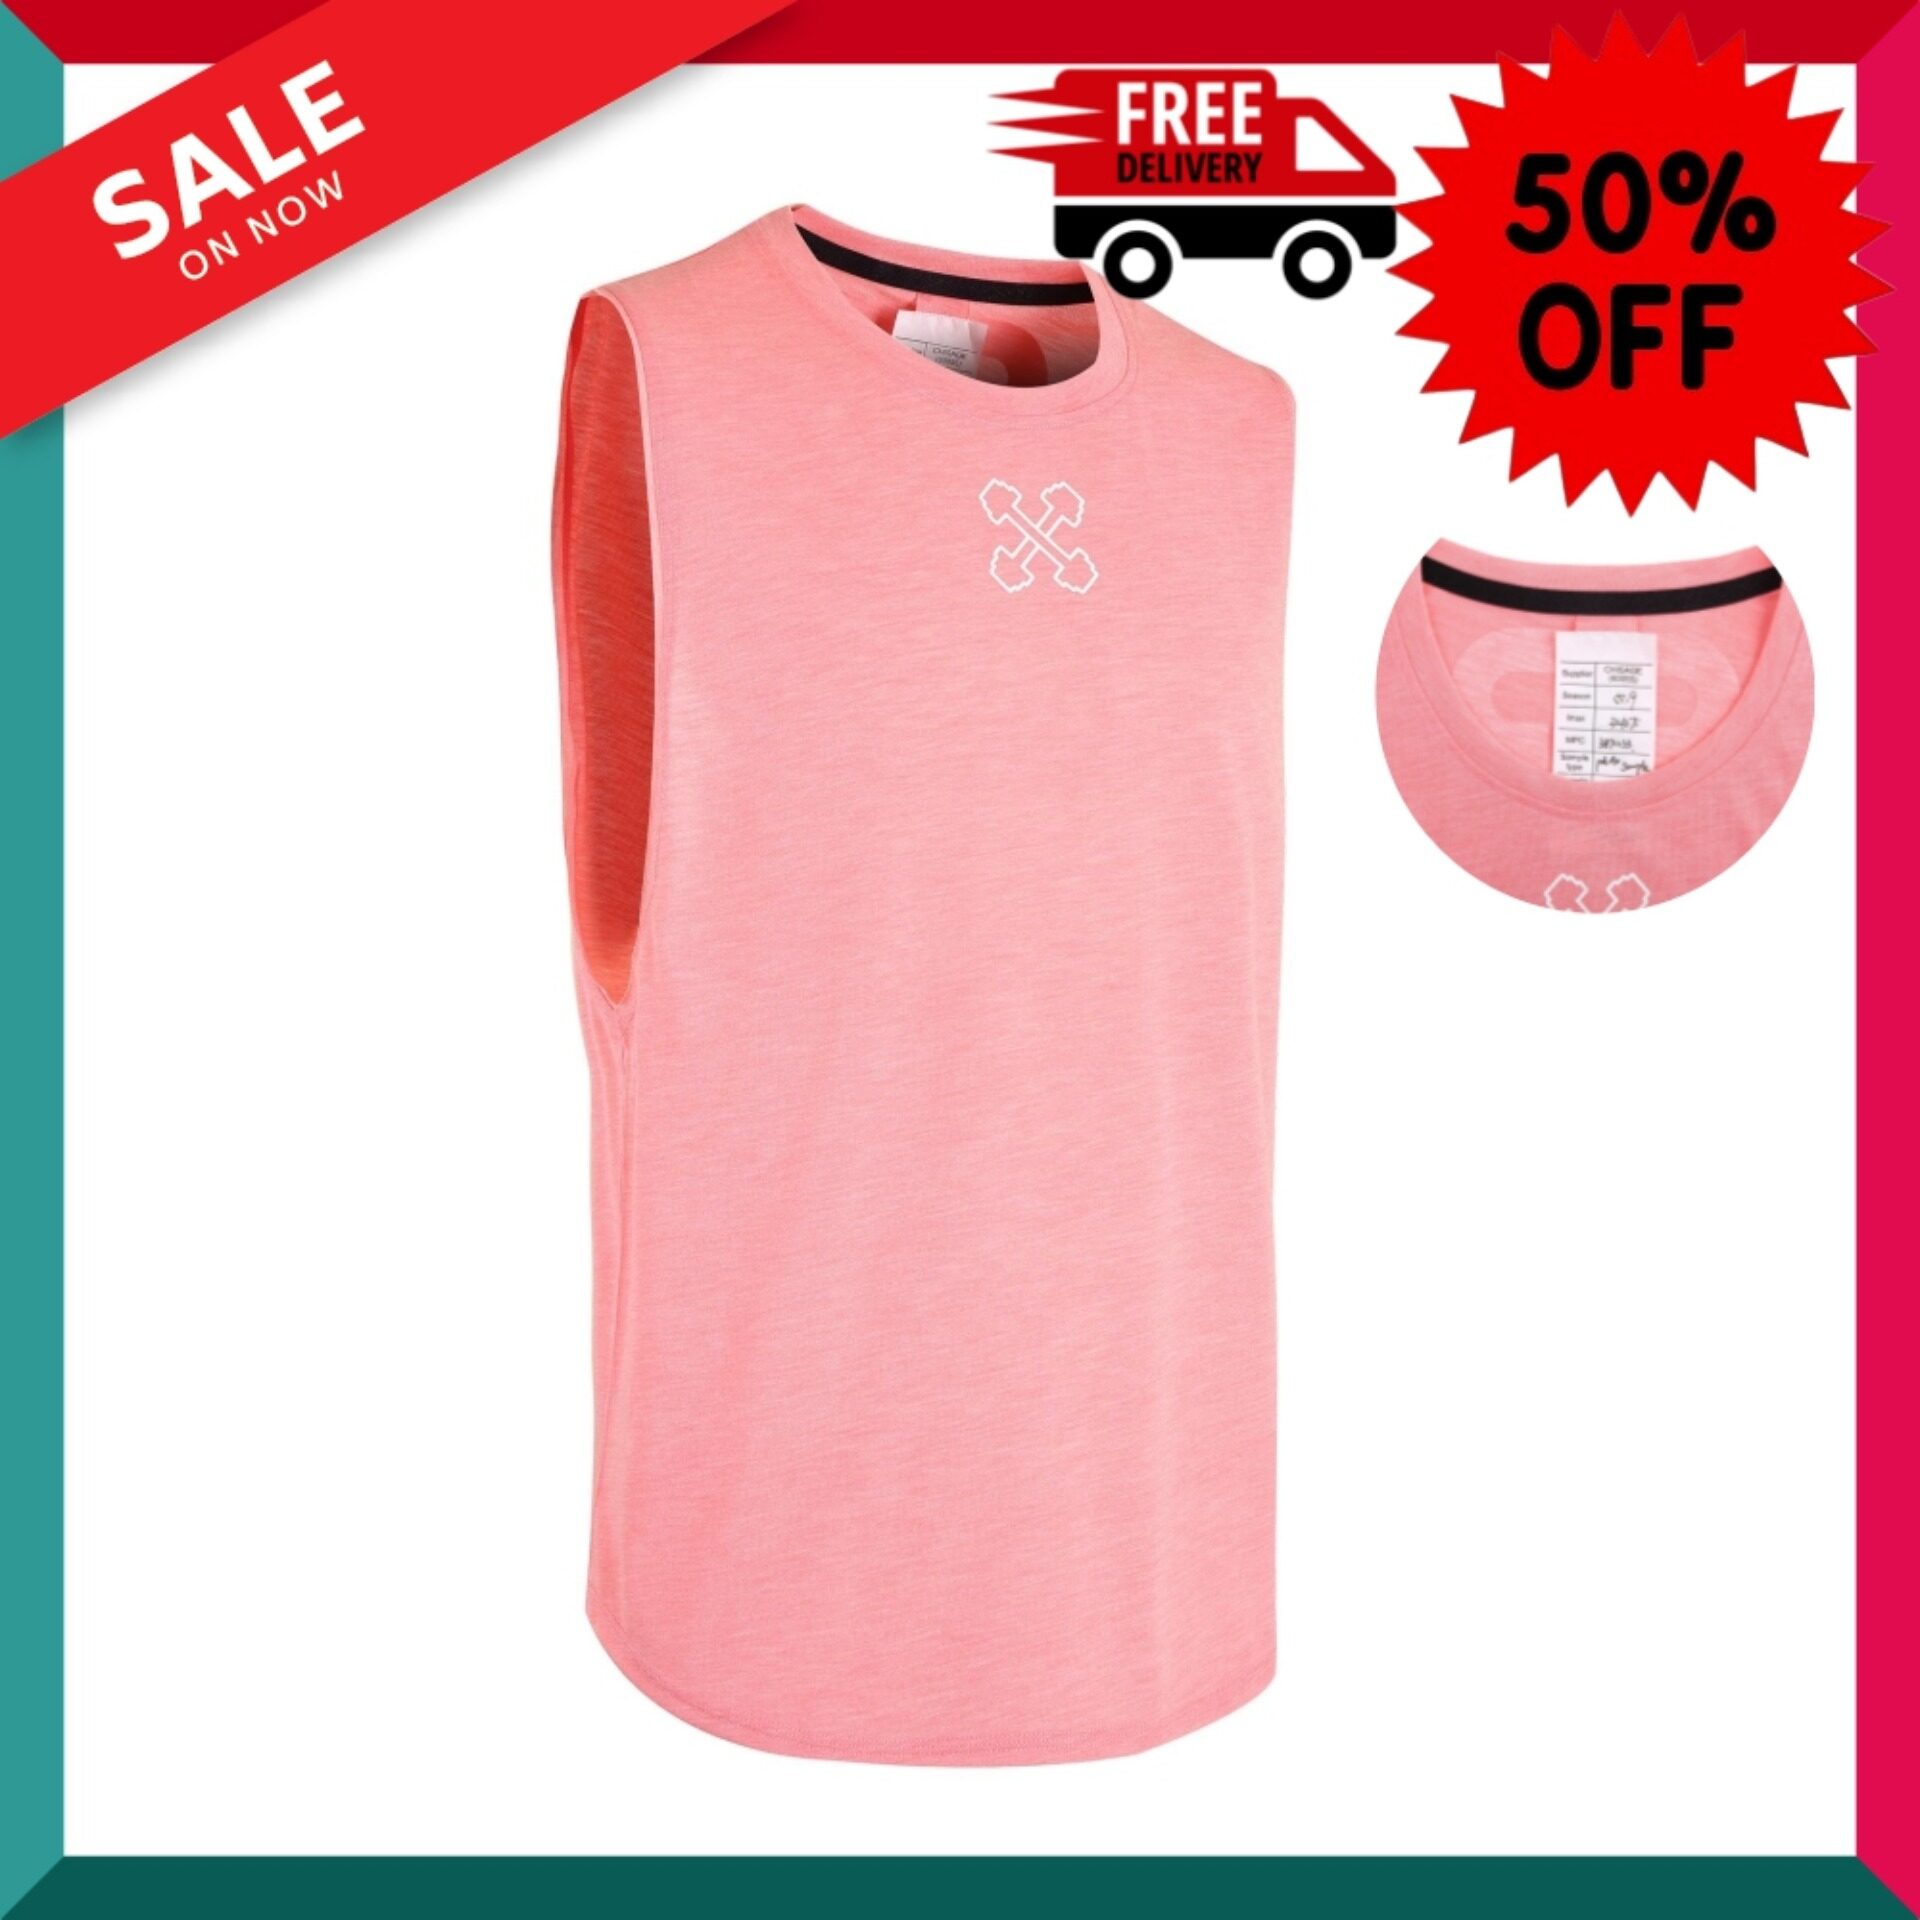 เสื้อแขนกุด (สีชมพู) Sleeveless Pink พิลาทิส Pilates อุปกรณ์กีฬา ถุงมือ ถุงมือฟิตเนส โปรโมชั่นสุดคุ้ม โค้งสุดท้าย ส่งฟรี Free Delivery